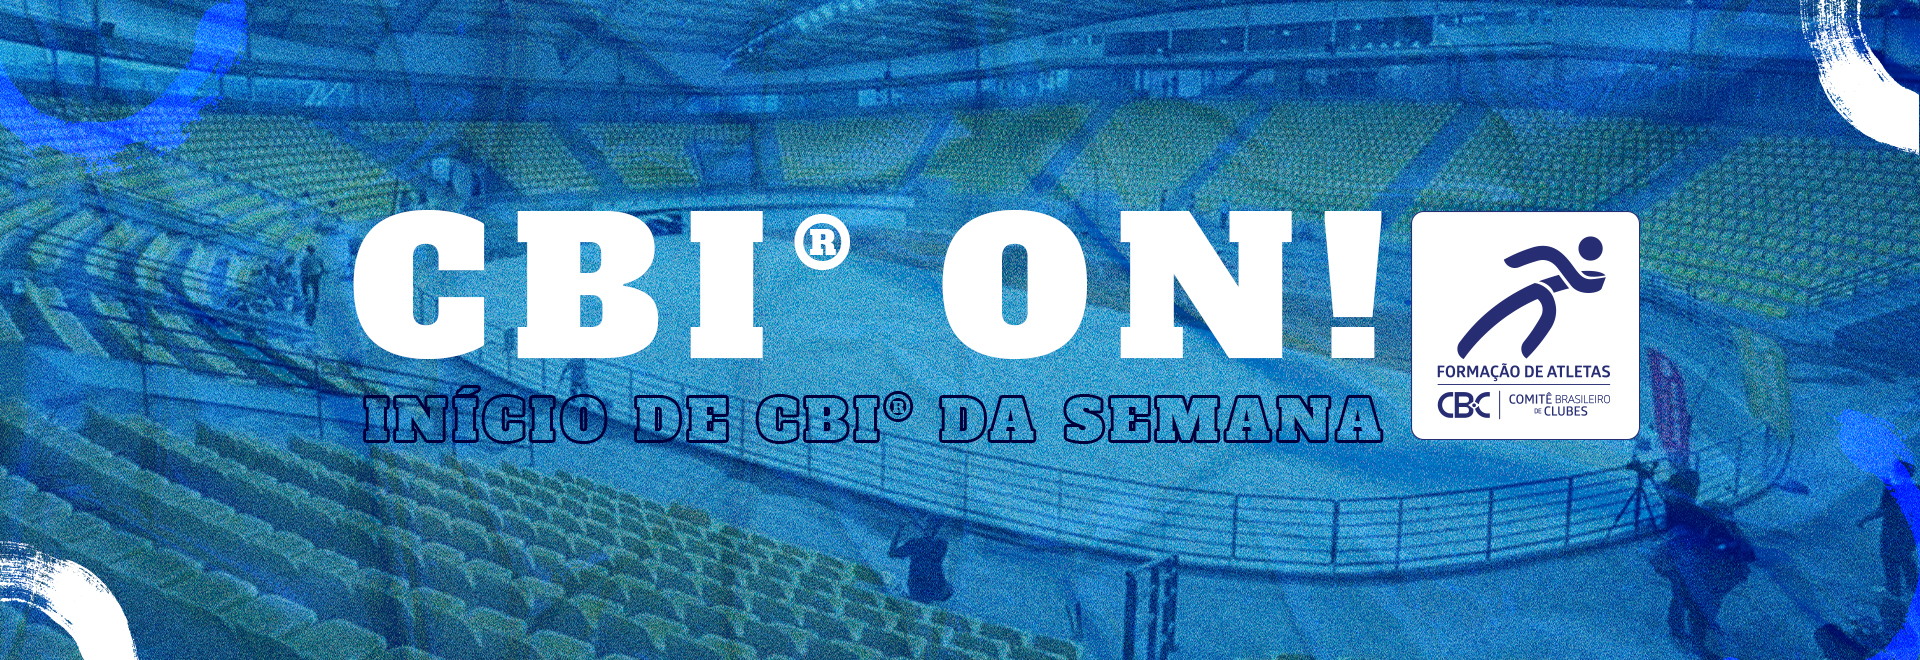 CBI® ON: Campeonatos de Vôlei de Praia e Basquetebol agitam a semana esportiva brasileira